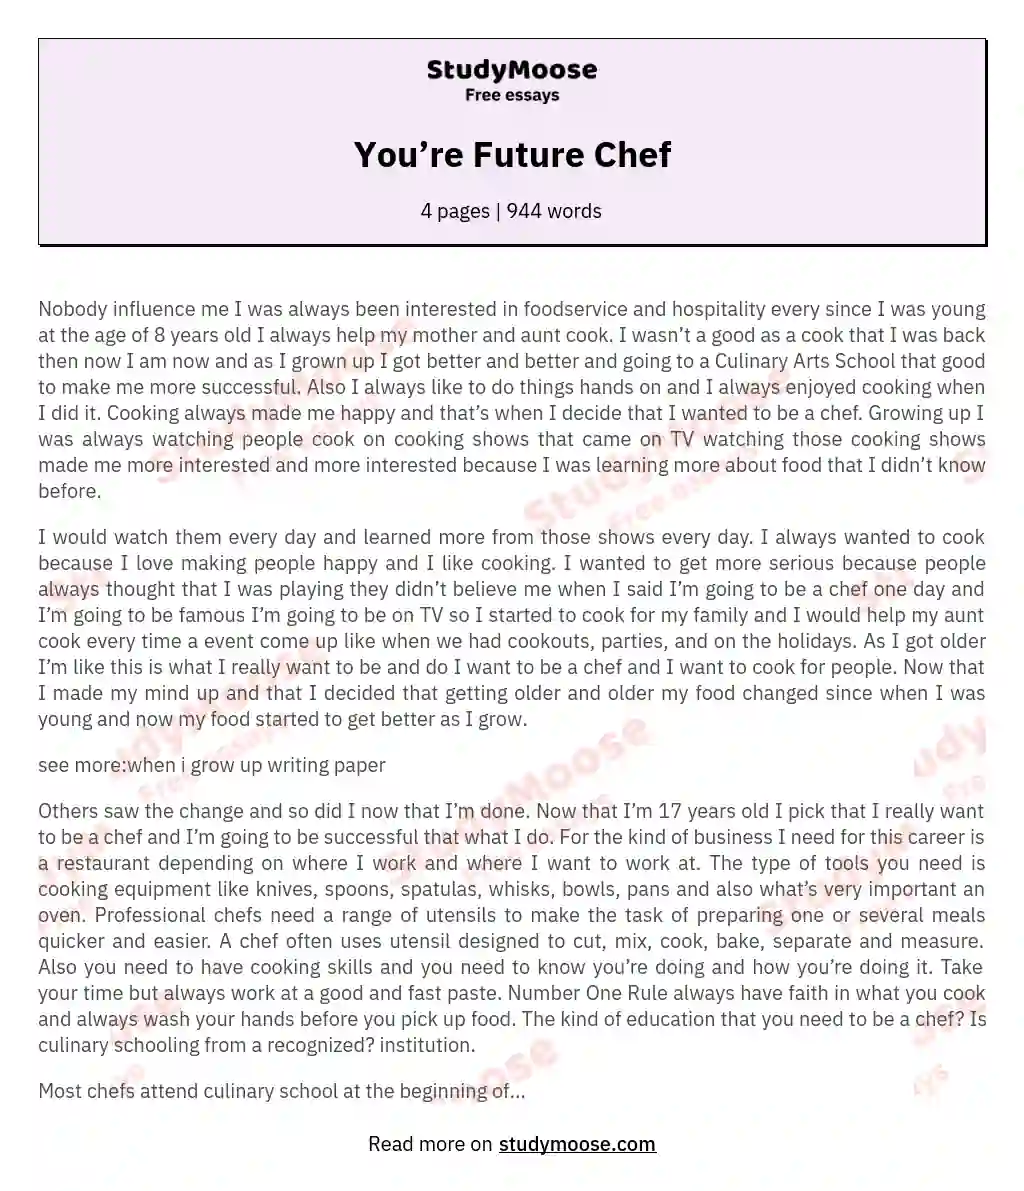 You’re Future Chef essay